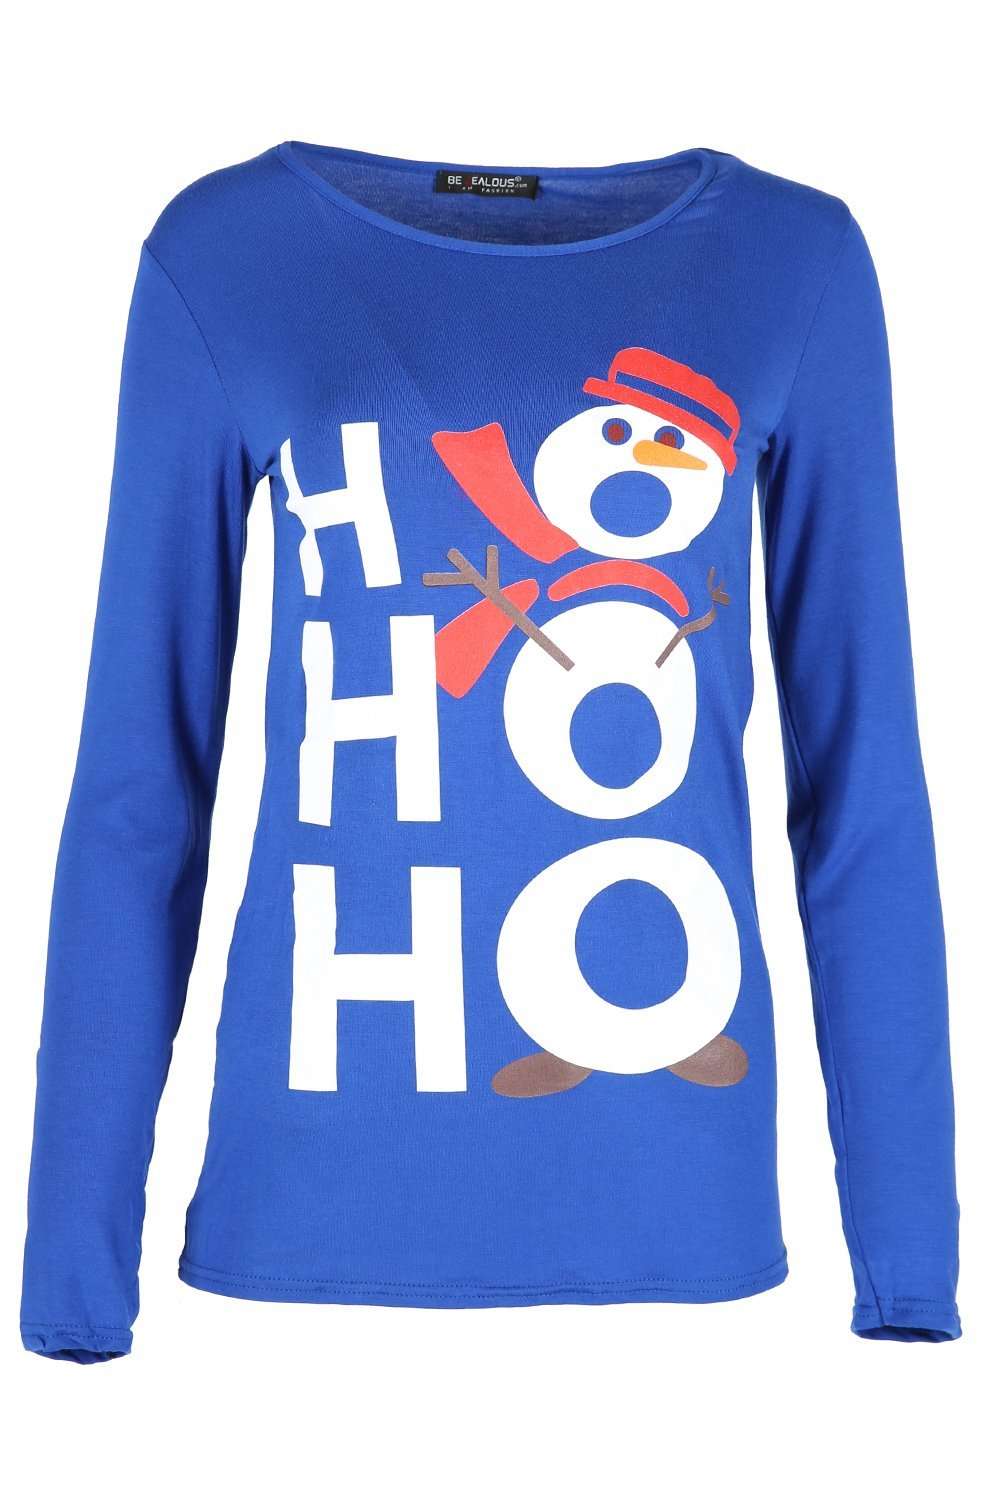 Hohoho Christmas Print Long Sleeve Snowman Tshirt - bejealous-com